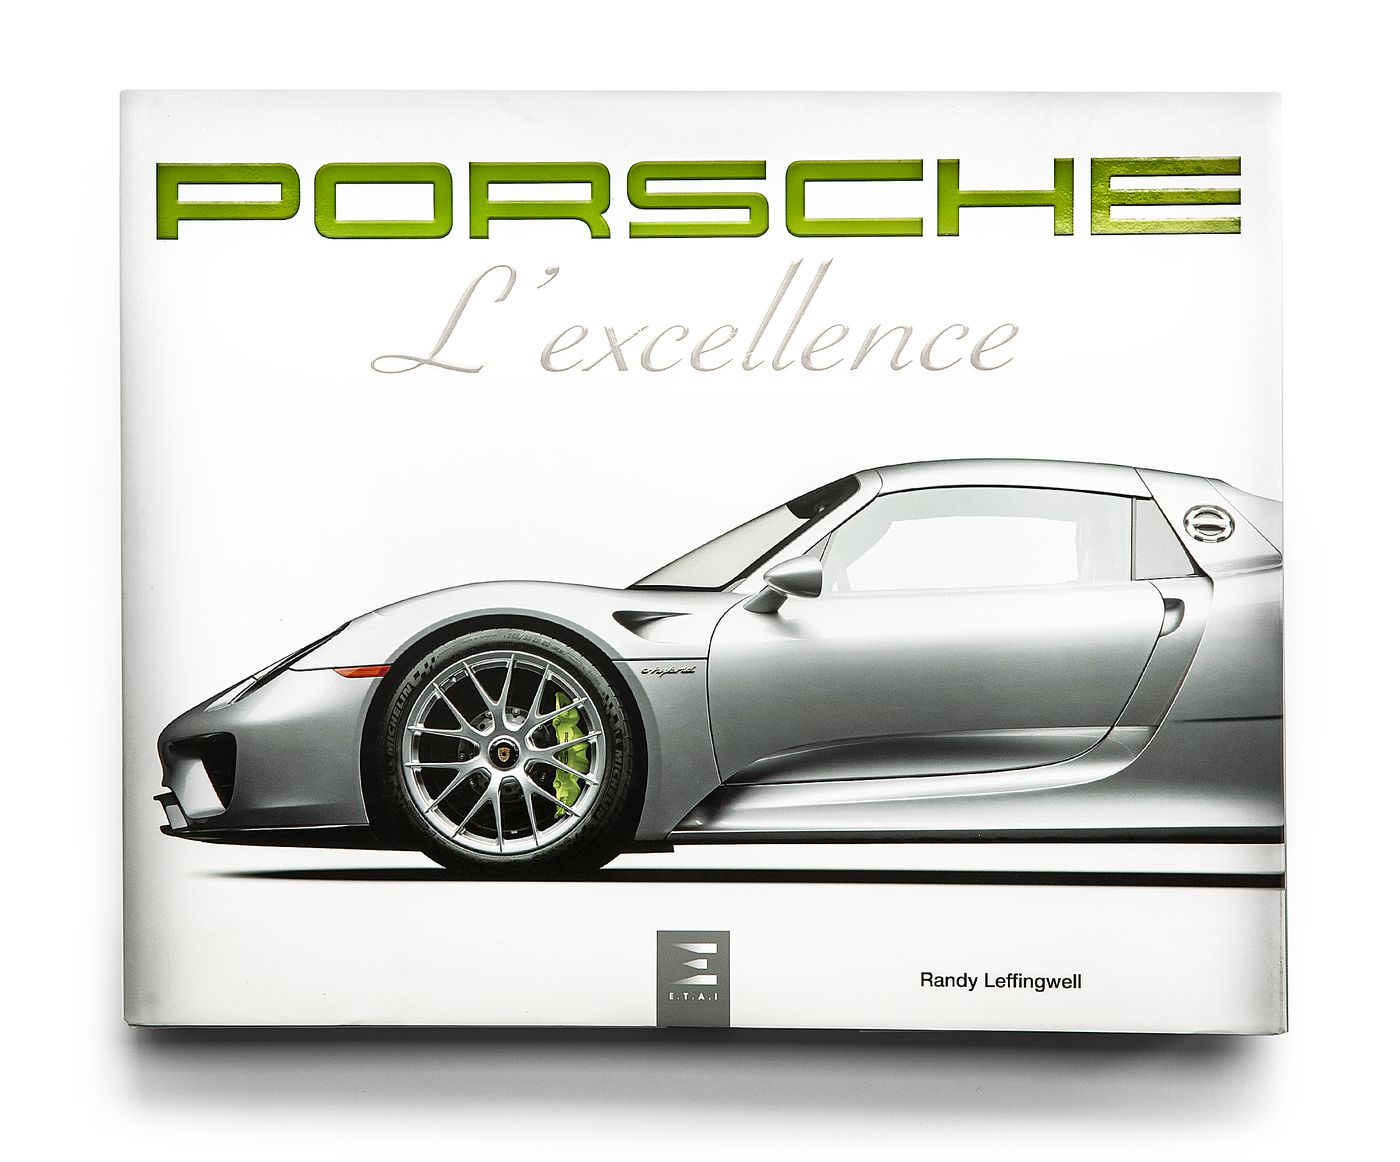 Porsche
Porsche
Porsche
Porsche
Porsche